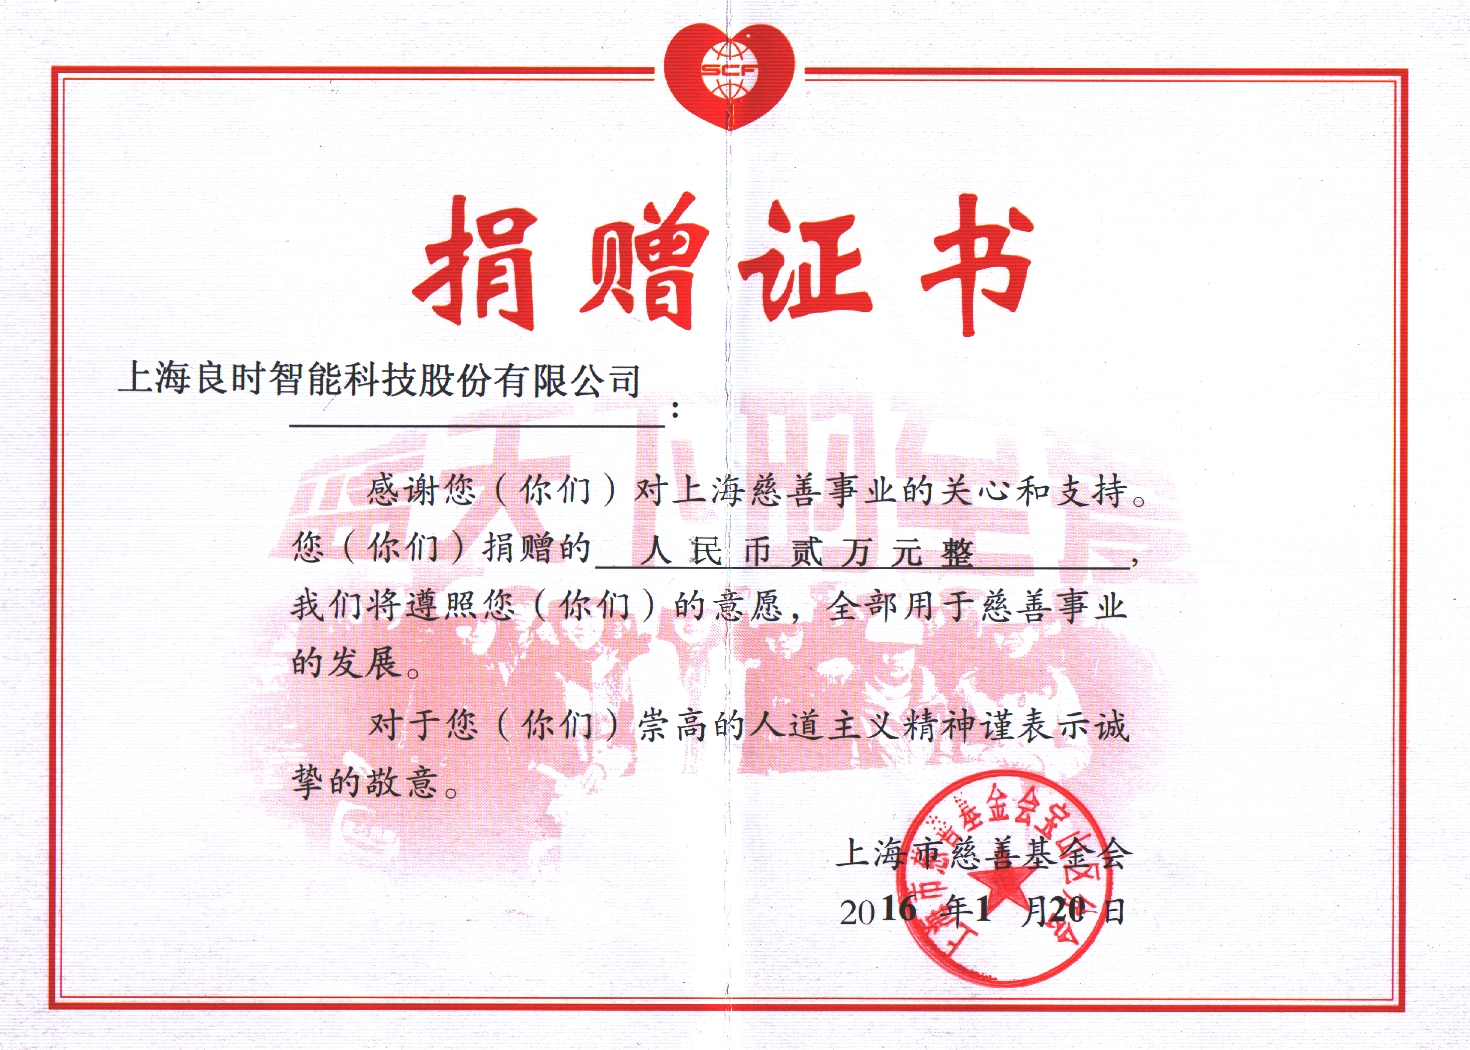 上海市慈善基金会颁发捐赠证书感谢上海良时慈善义举